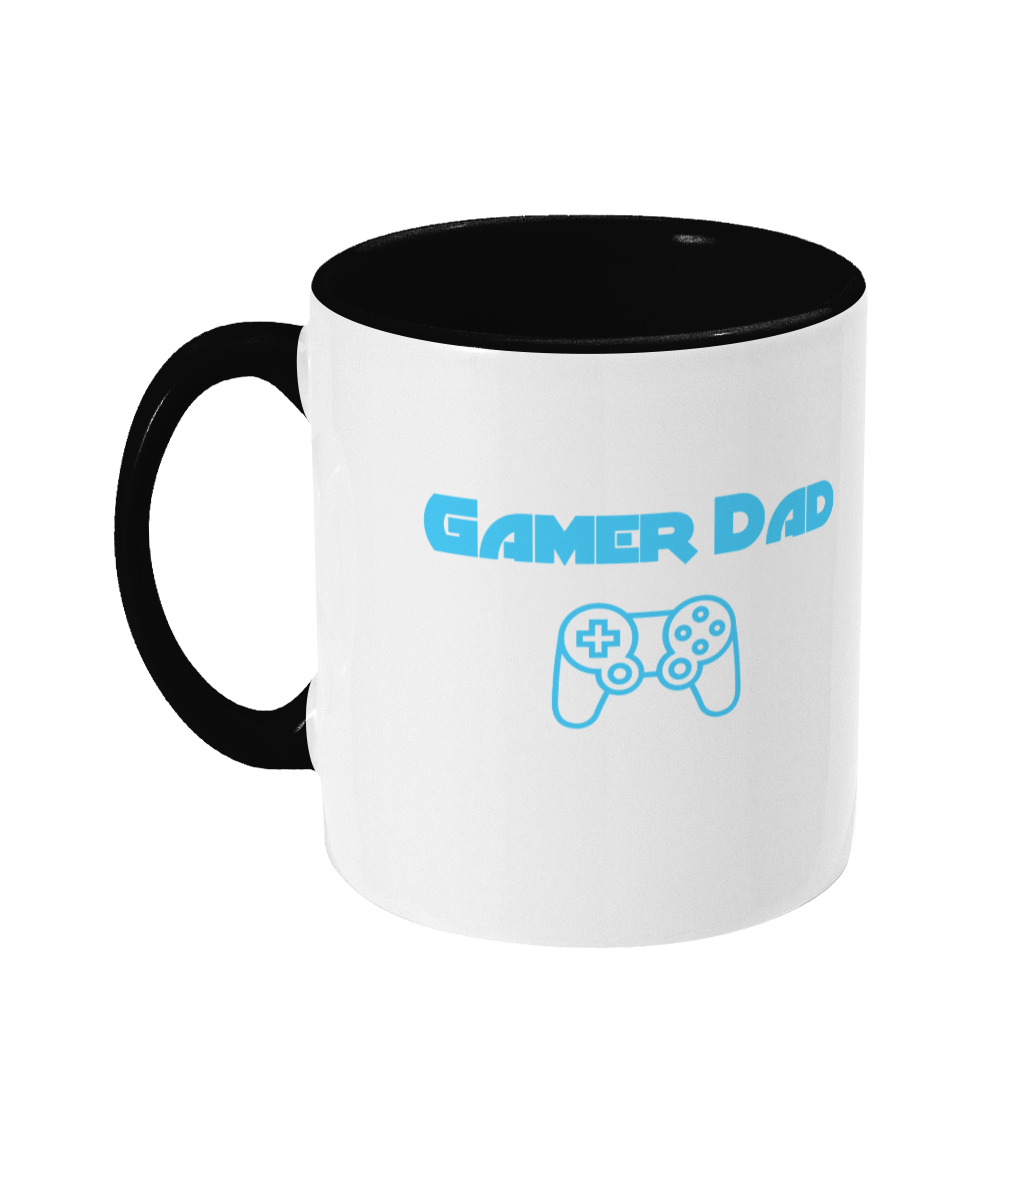 Gaming Parent 'Gamer Dad' Mug